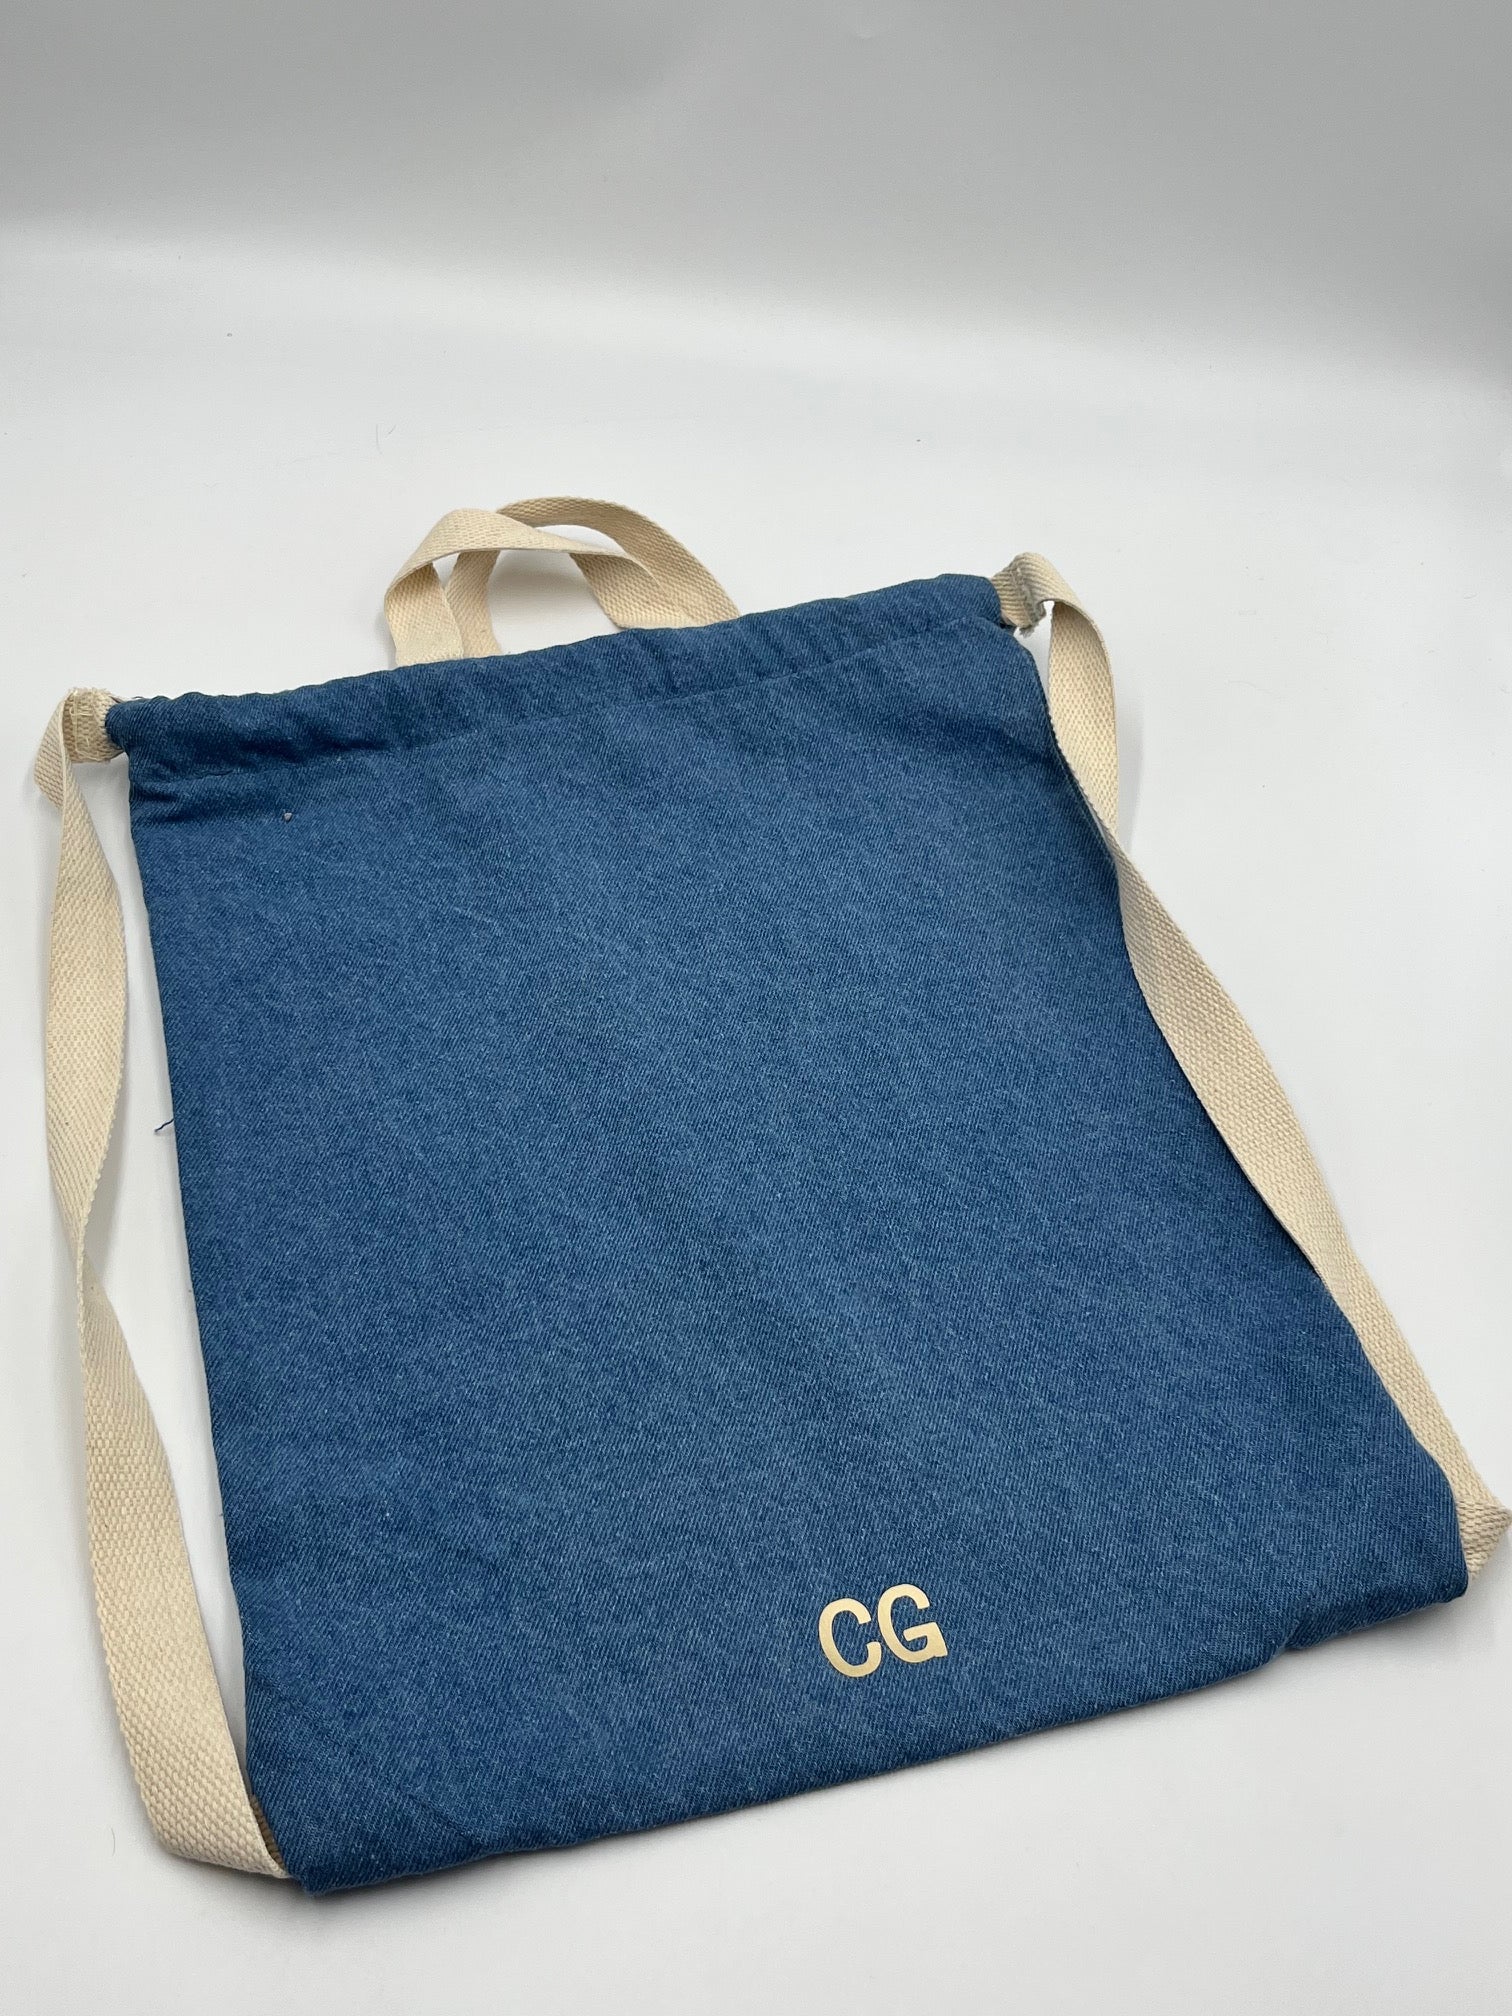 Personalised Denim Drawstring Bag - sweetassistant